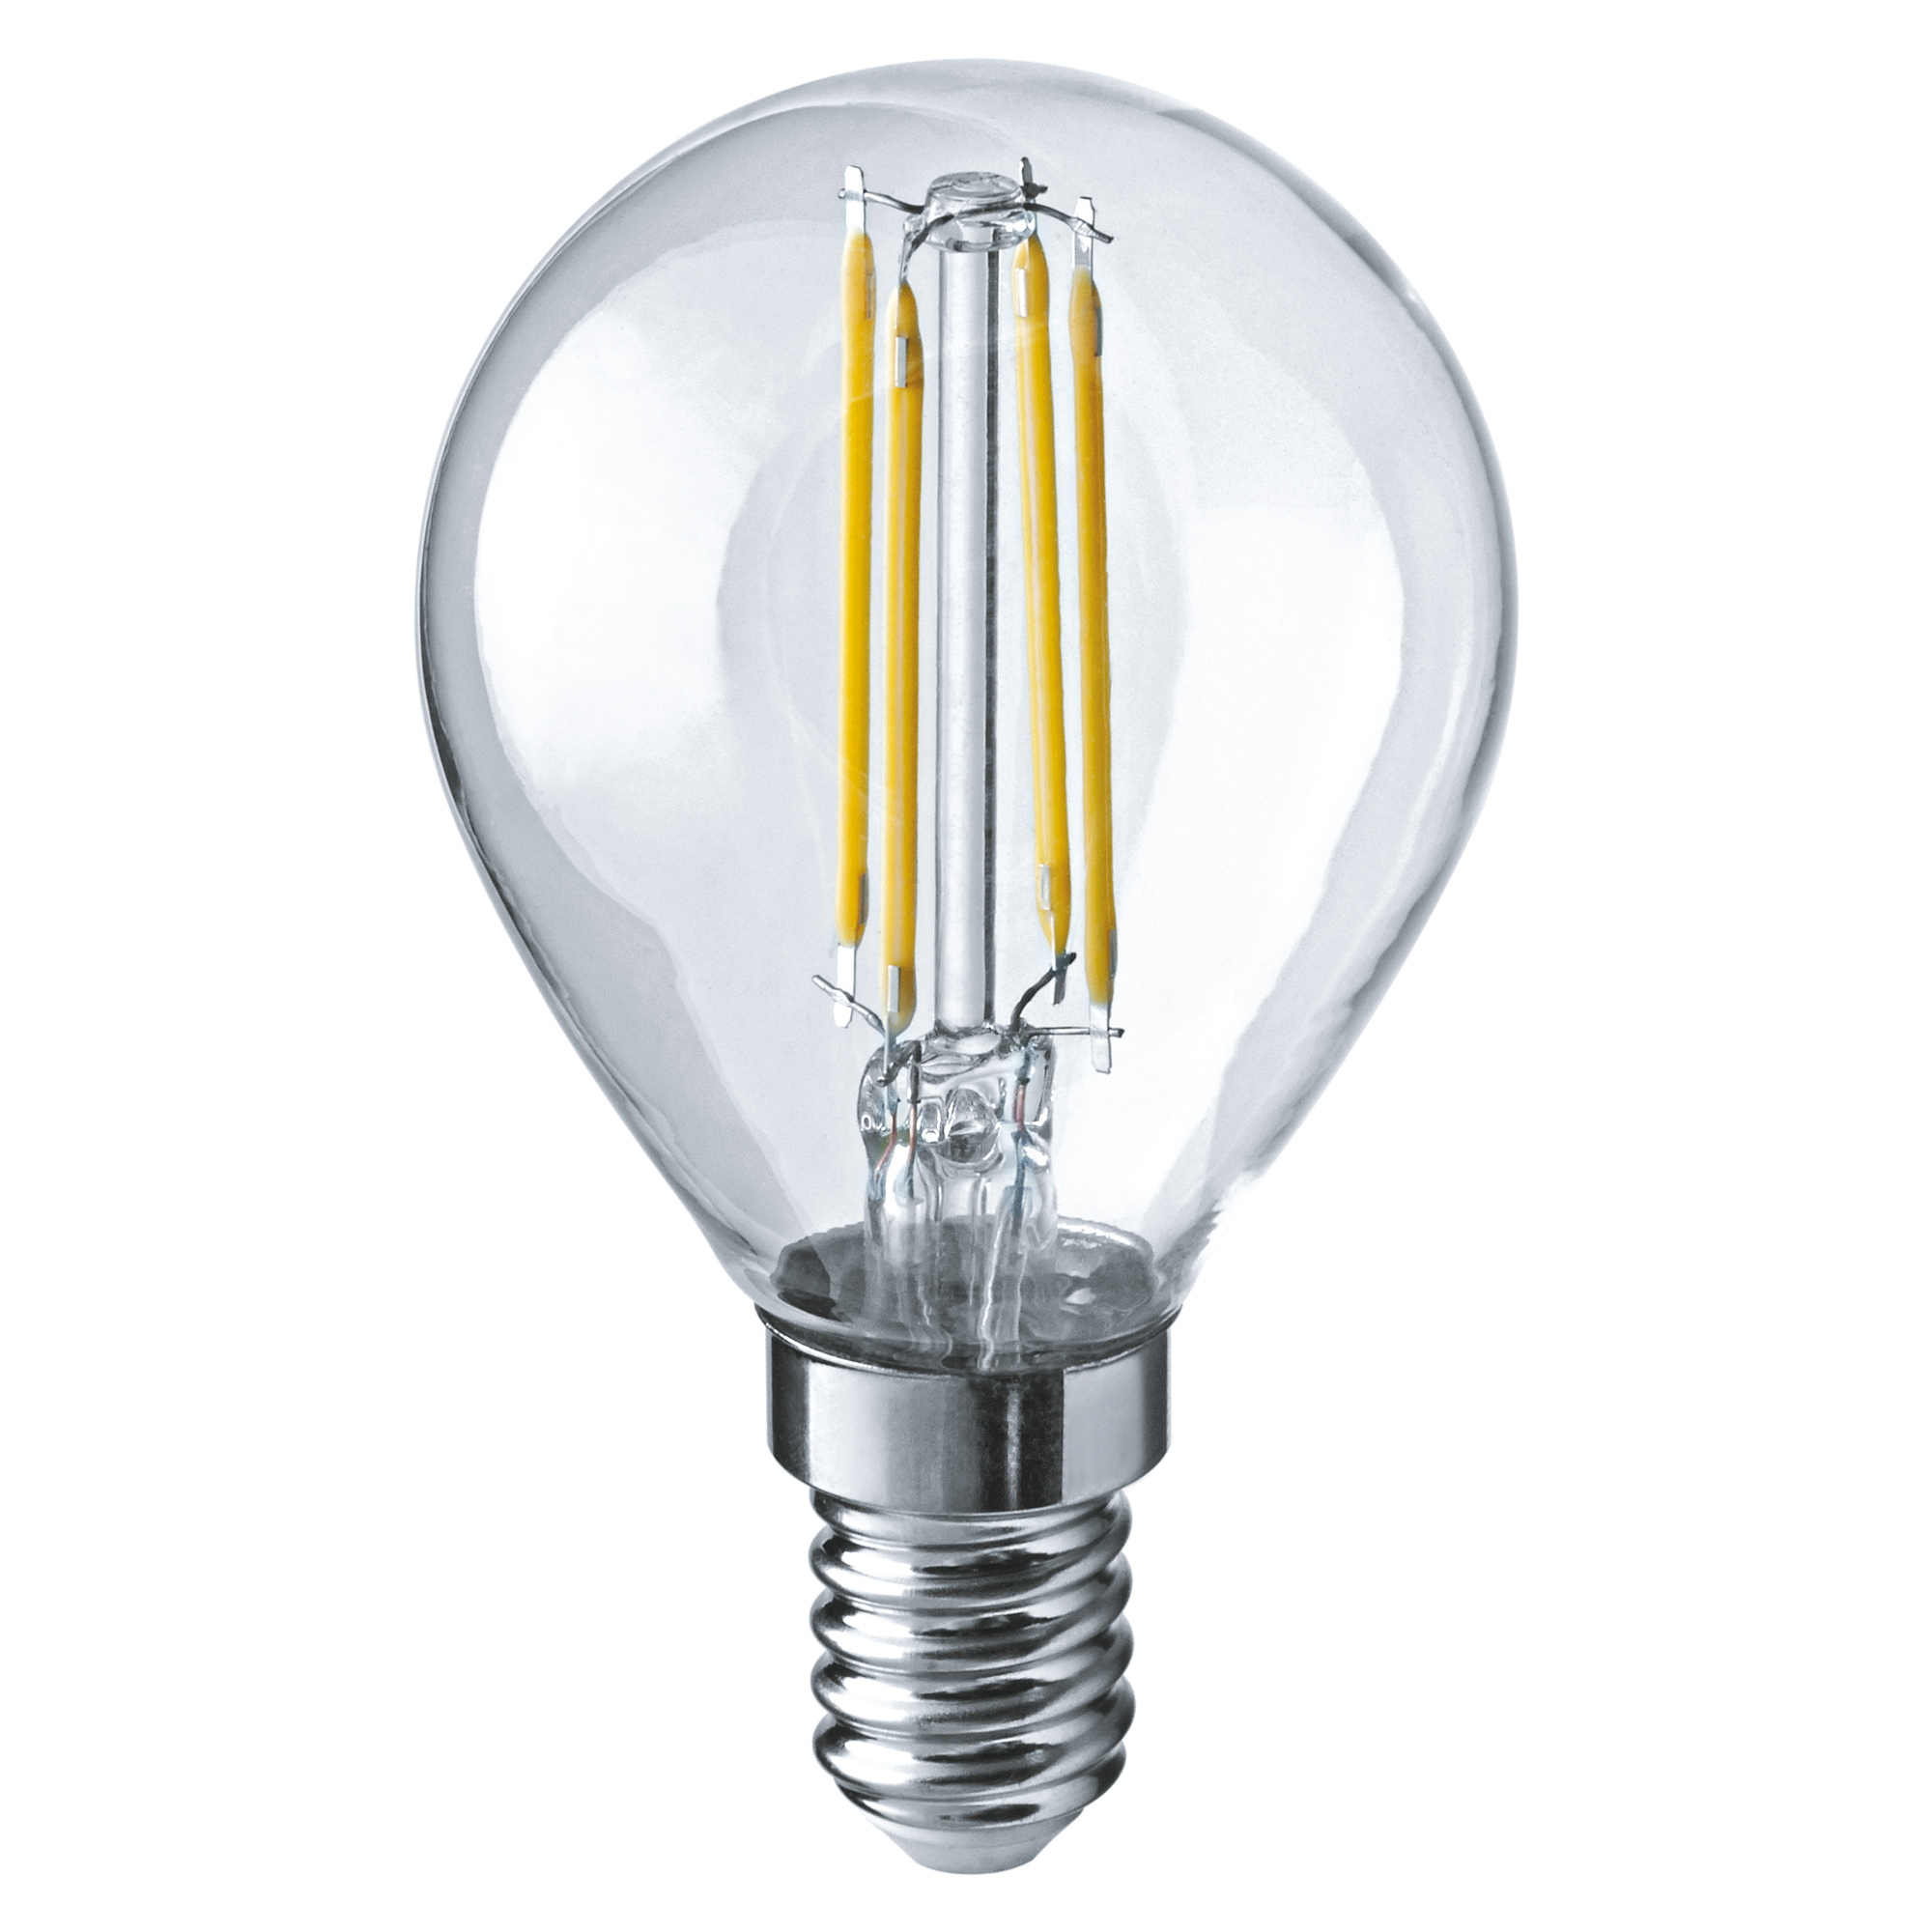 Лампа светодиодная Navigator шарик прозрачная 4Вт цоколь E14 (теплый свет) лампа светодиодная navigator e14 2700к теплый белый свет прозрачная шарик 4 вт